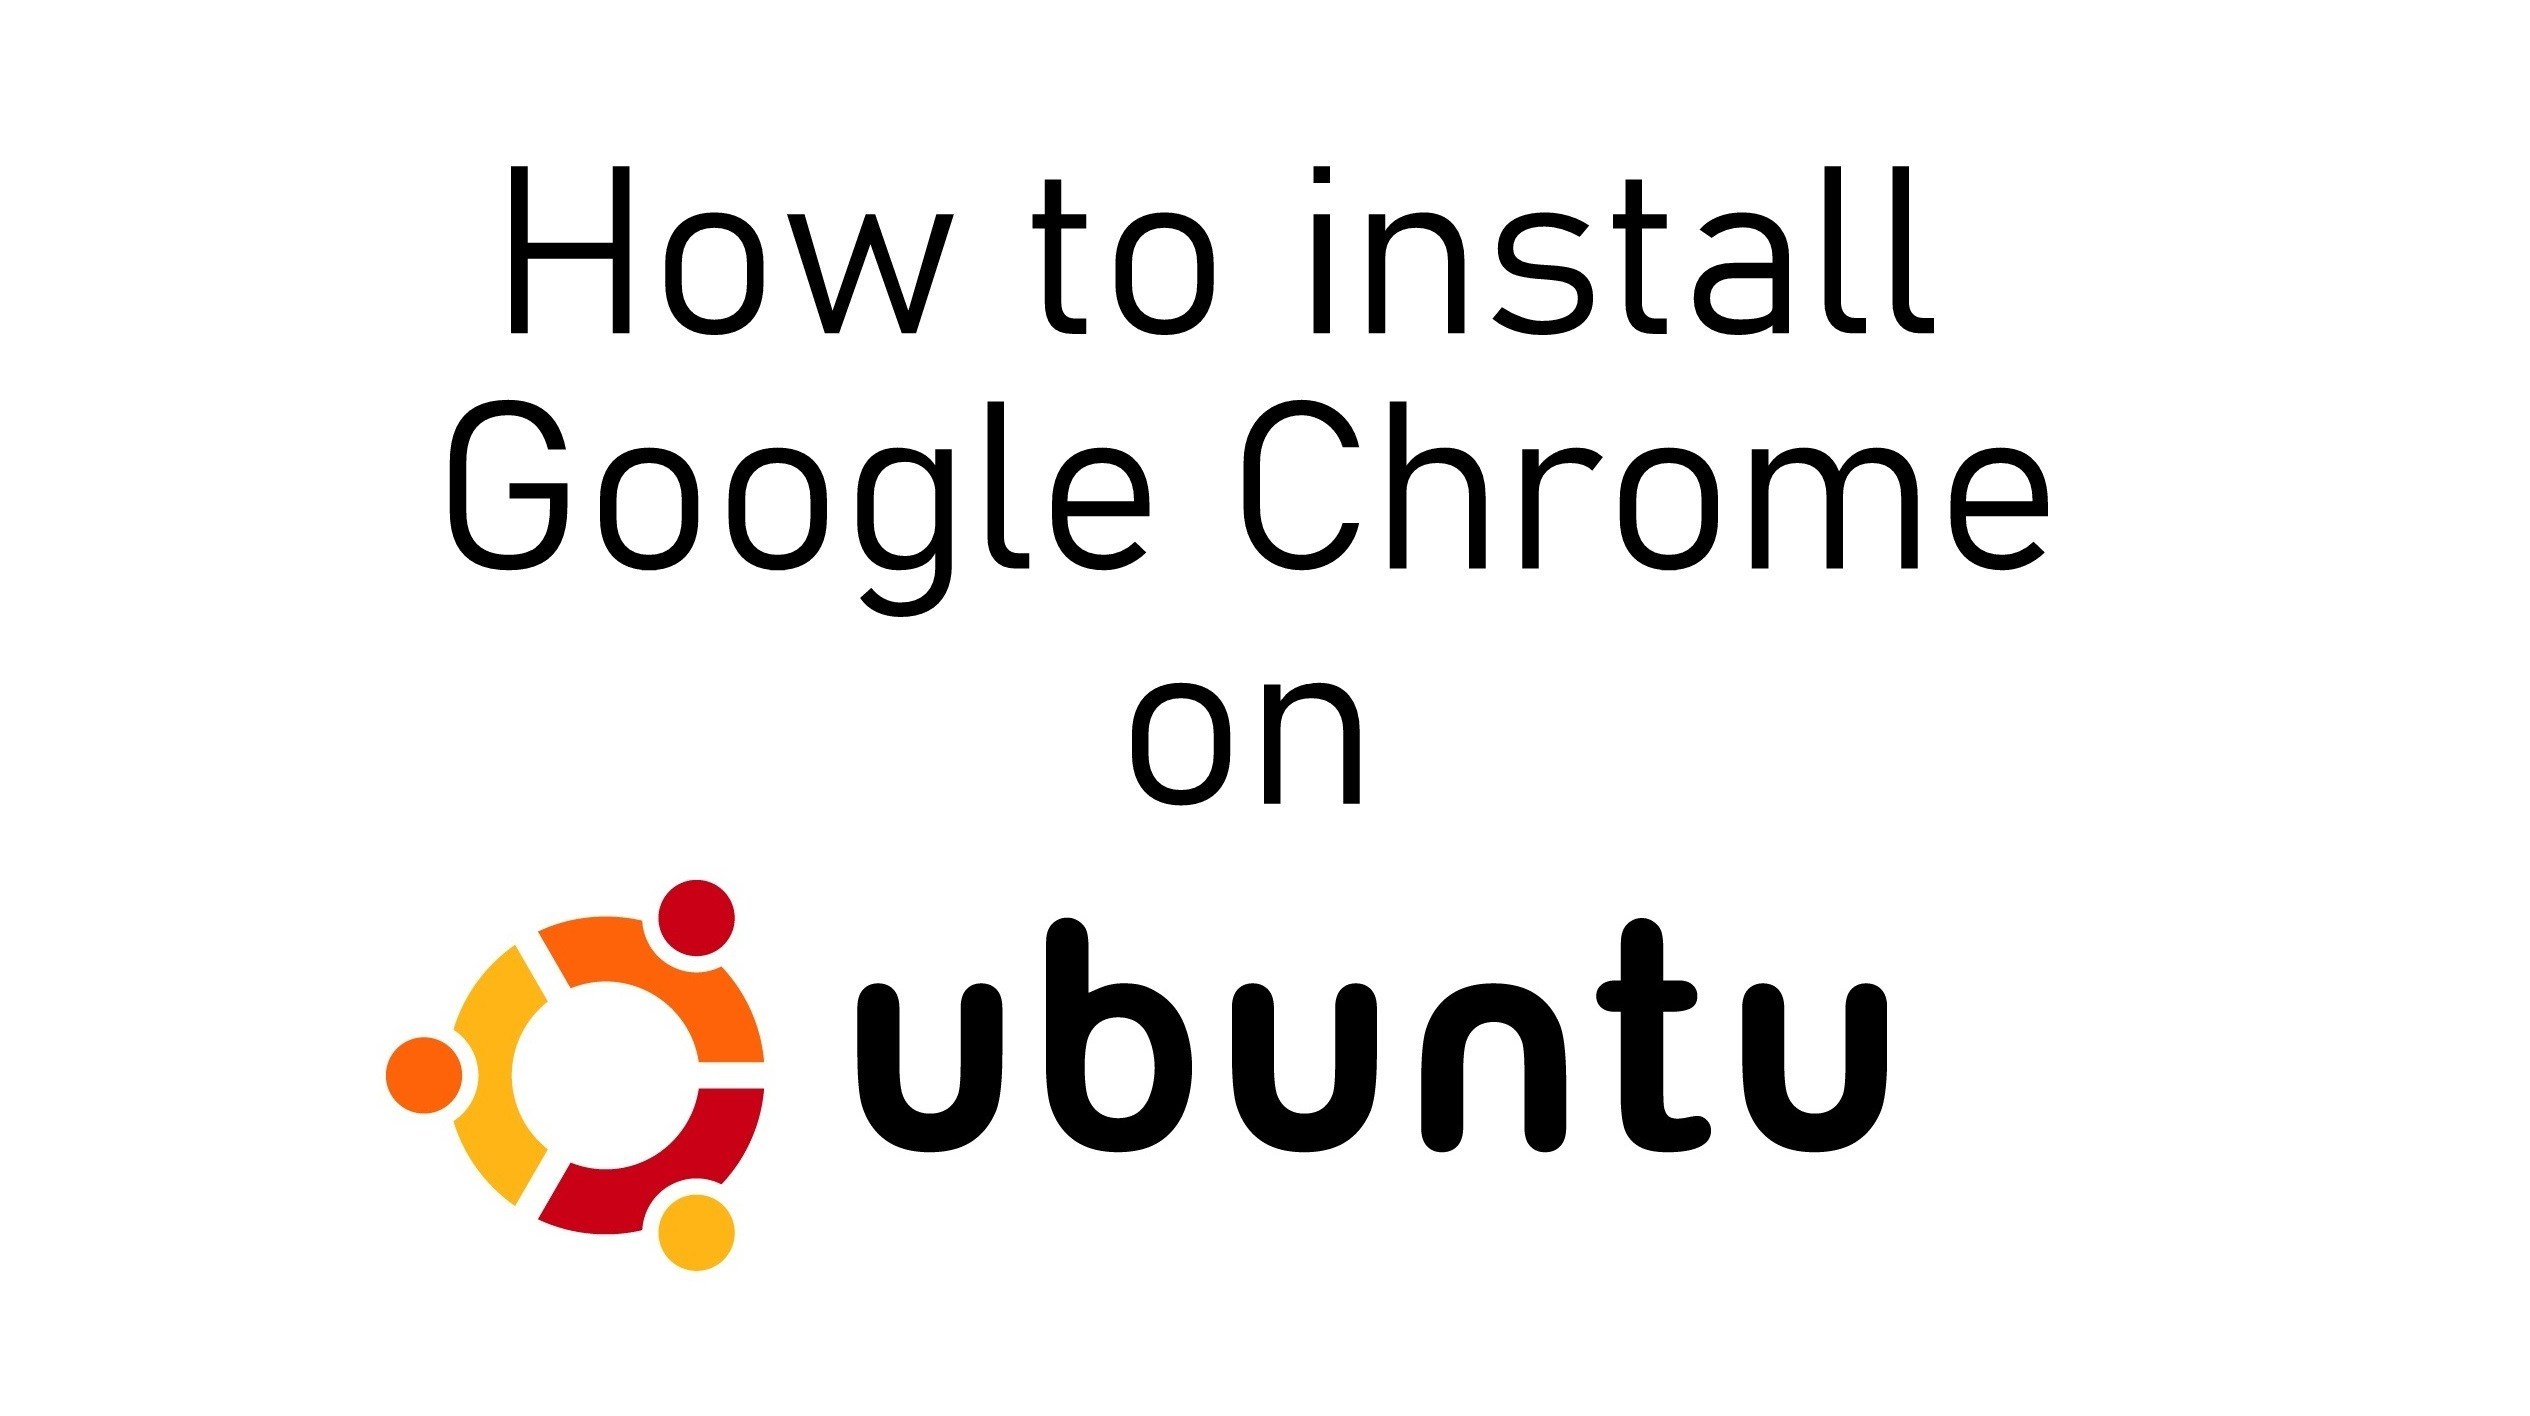 Nola instalatu Google Chrome Ubuntu-n
